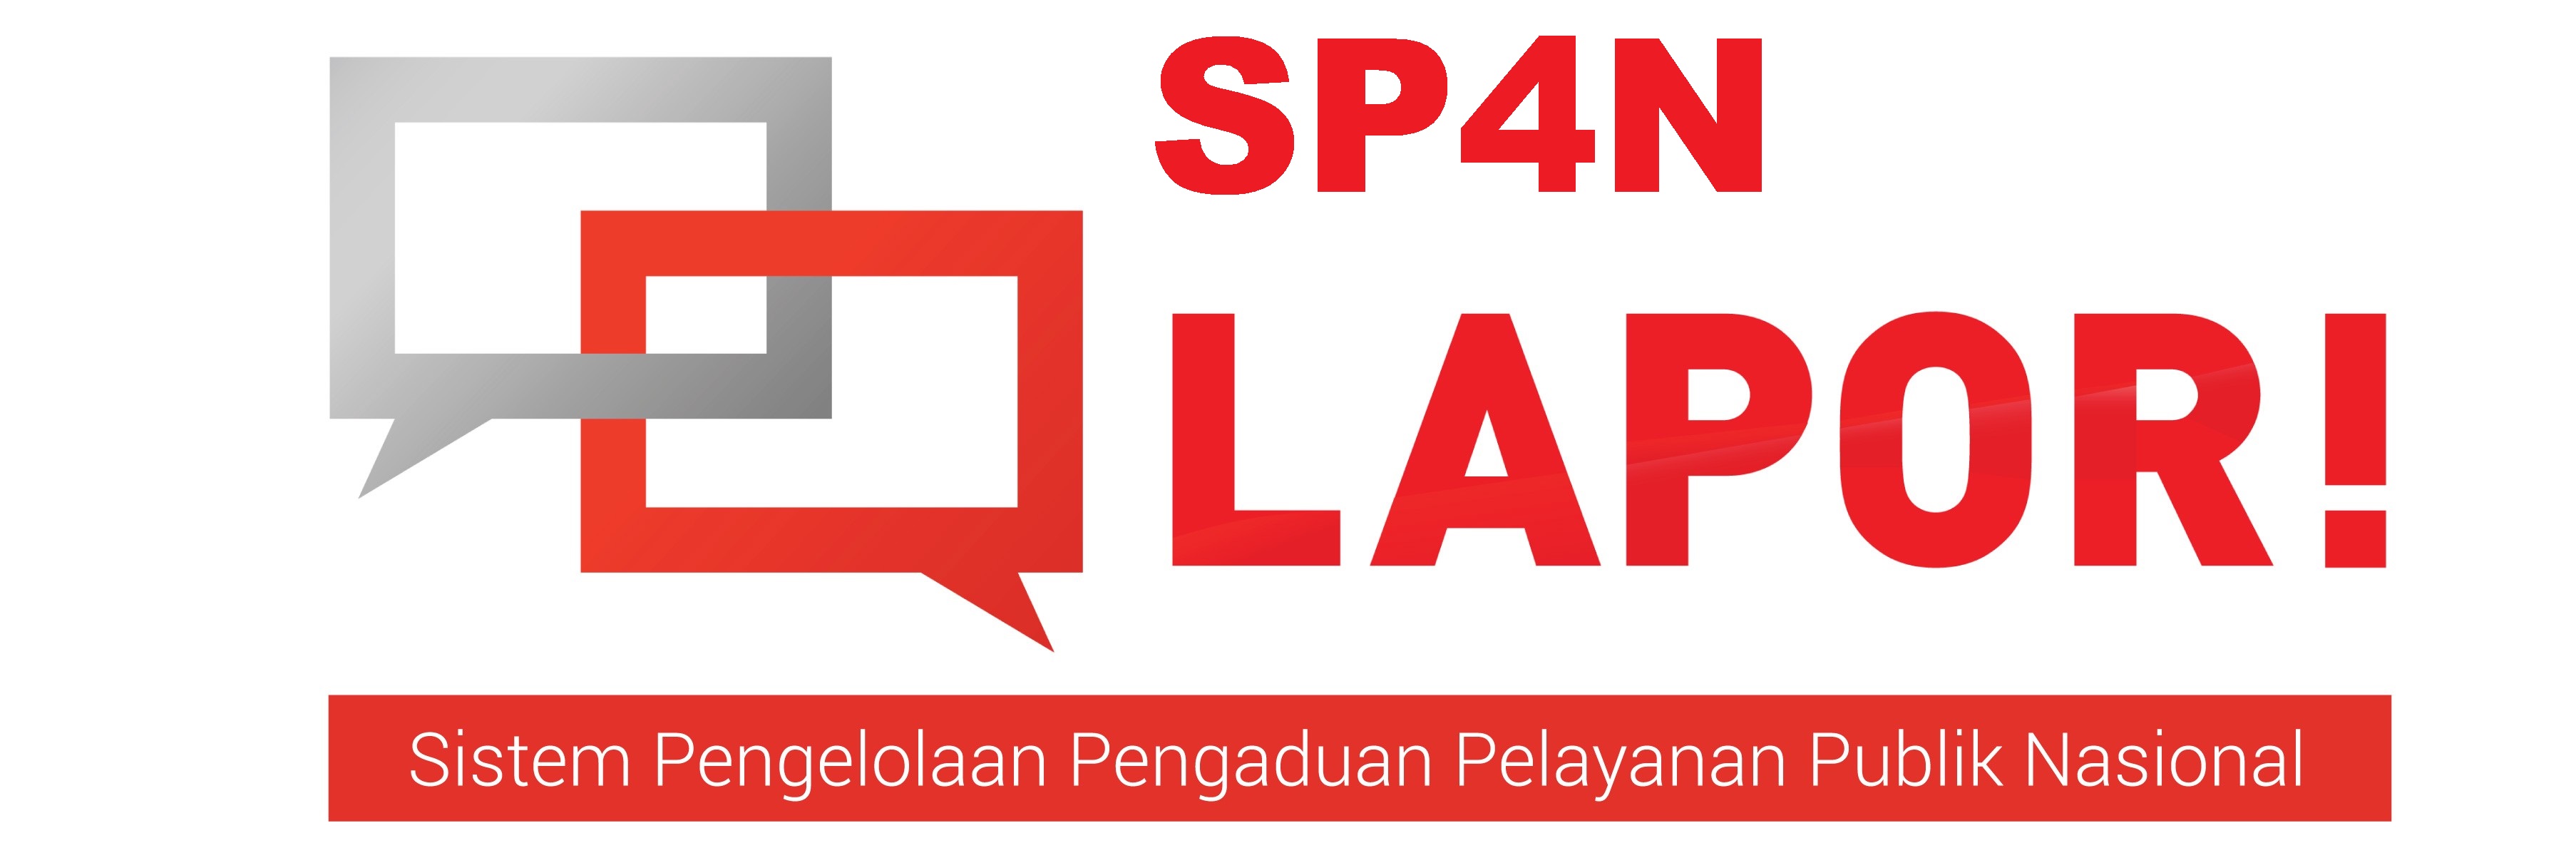 Sistem Pengelolaan Pengaduan Pelayanan Publik Nasional (SP4N) - Layanan Aspirasi dan Pengaduan Online Rakyat (LAPOR)